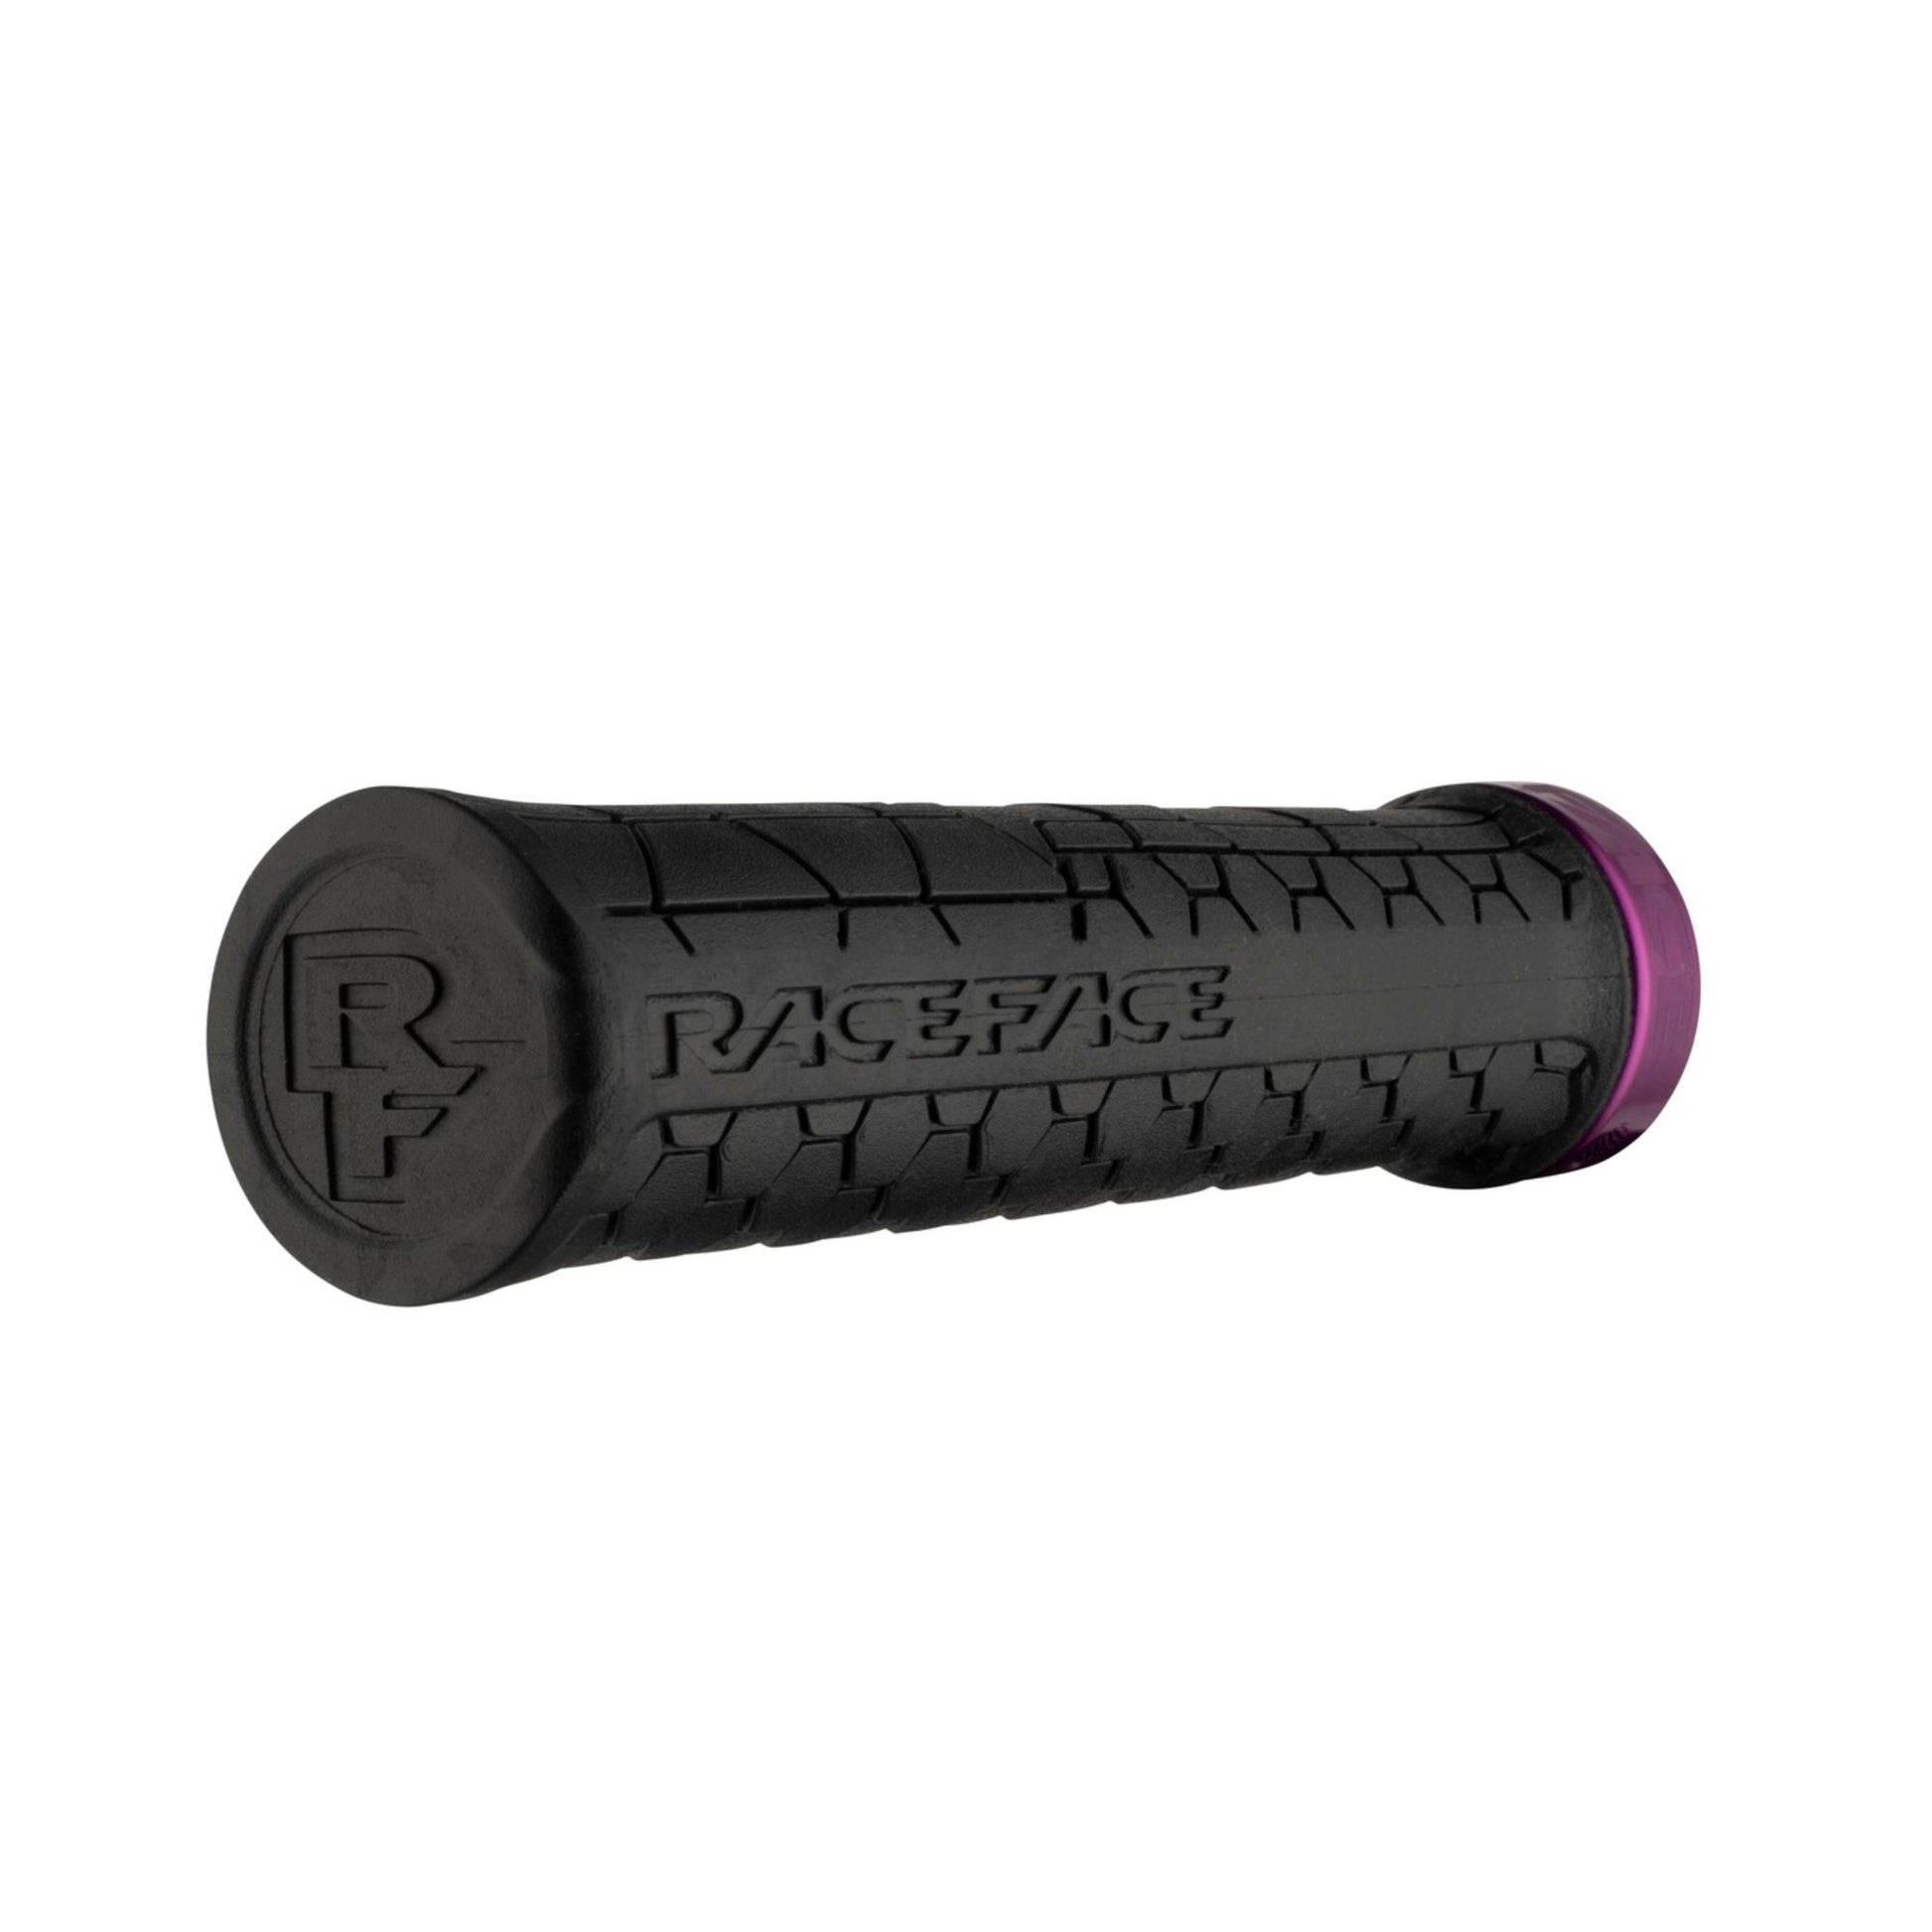 Race Face Gretta Lock-On Bike Handlebar Grips Black/Purple 33mm